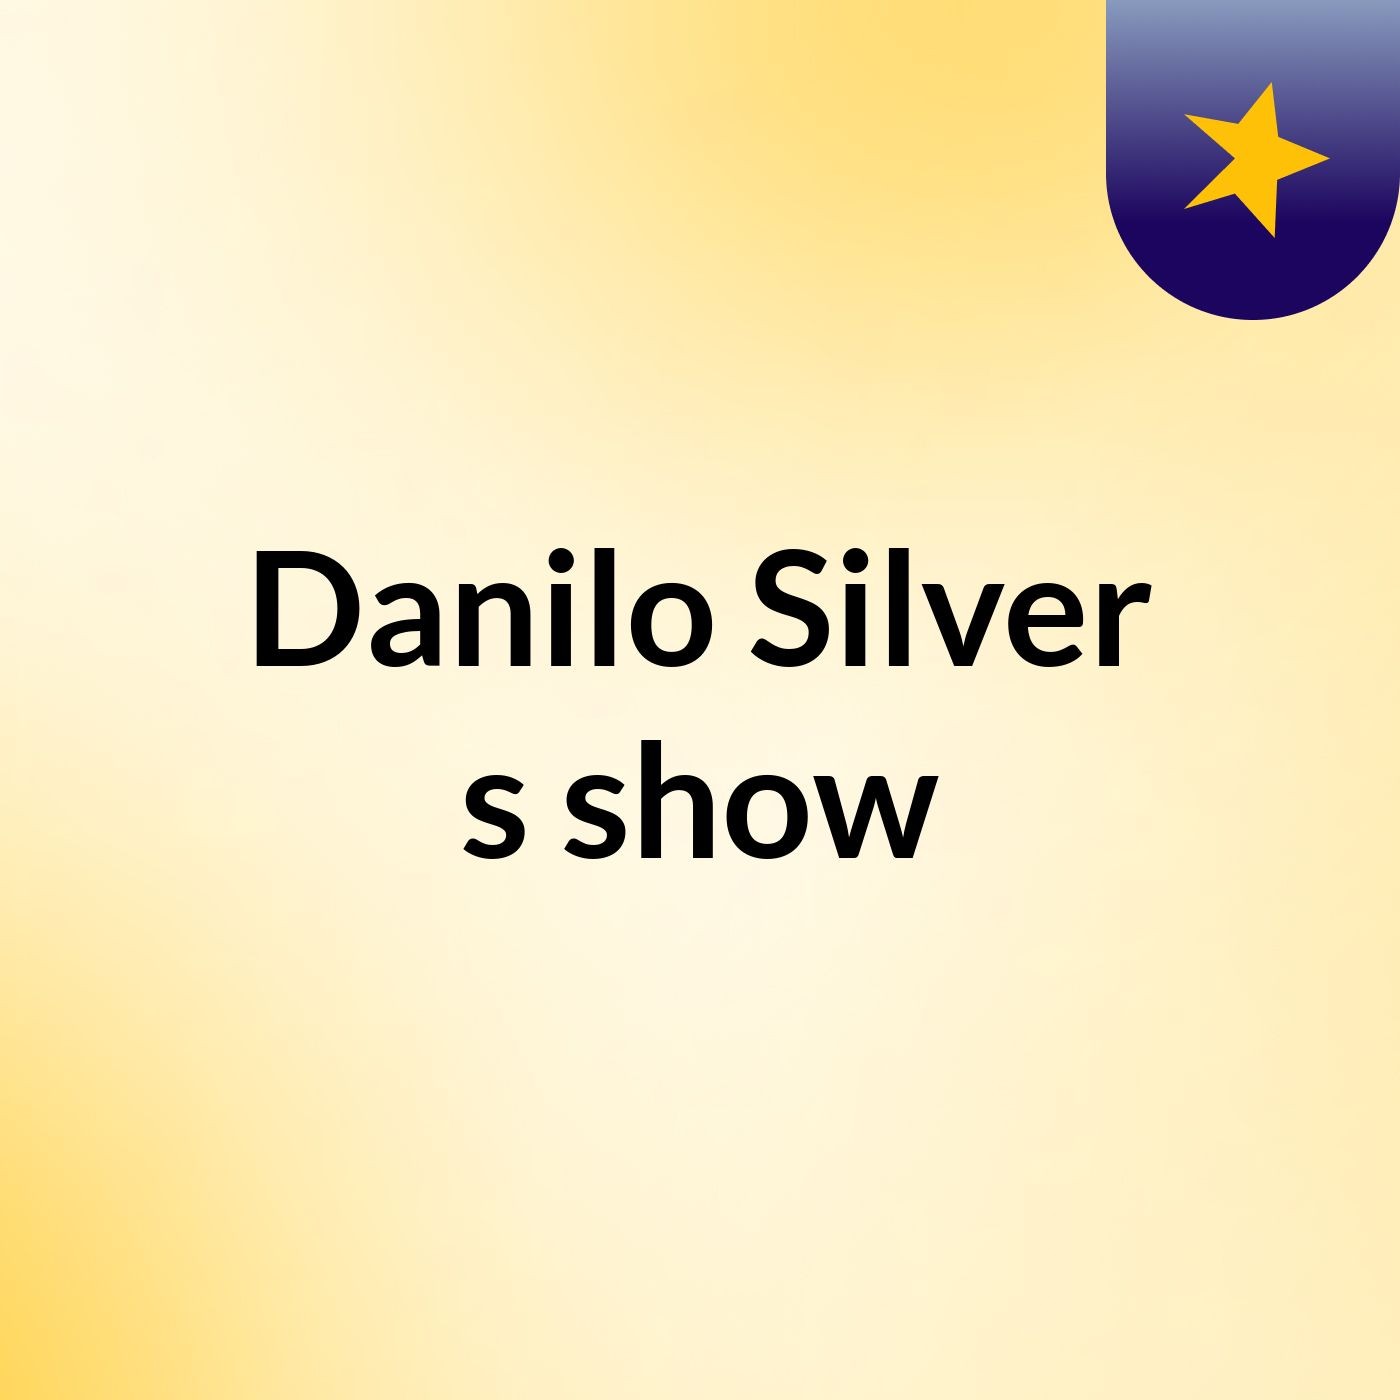 Danilo Silver's show